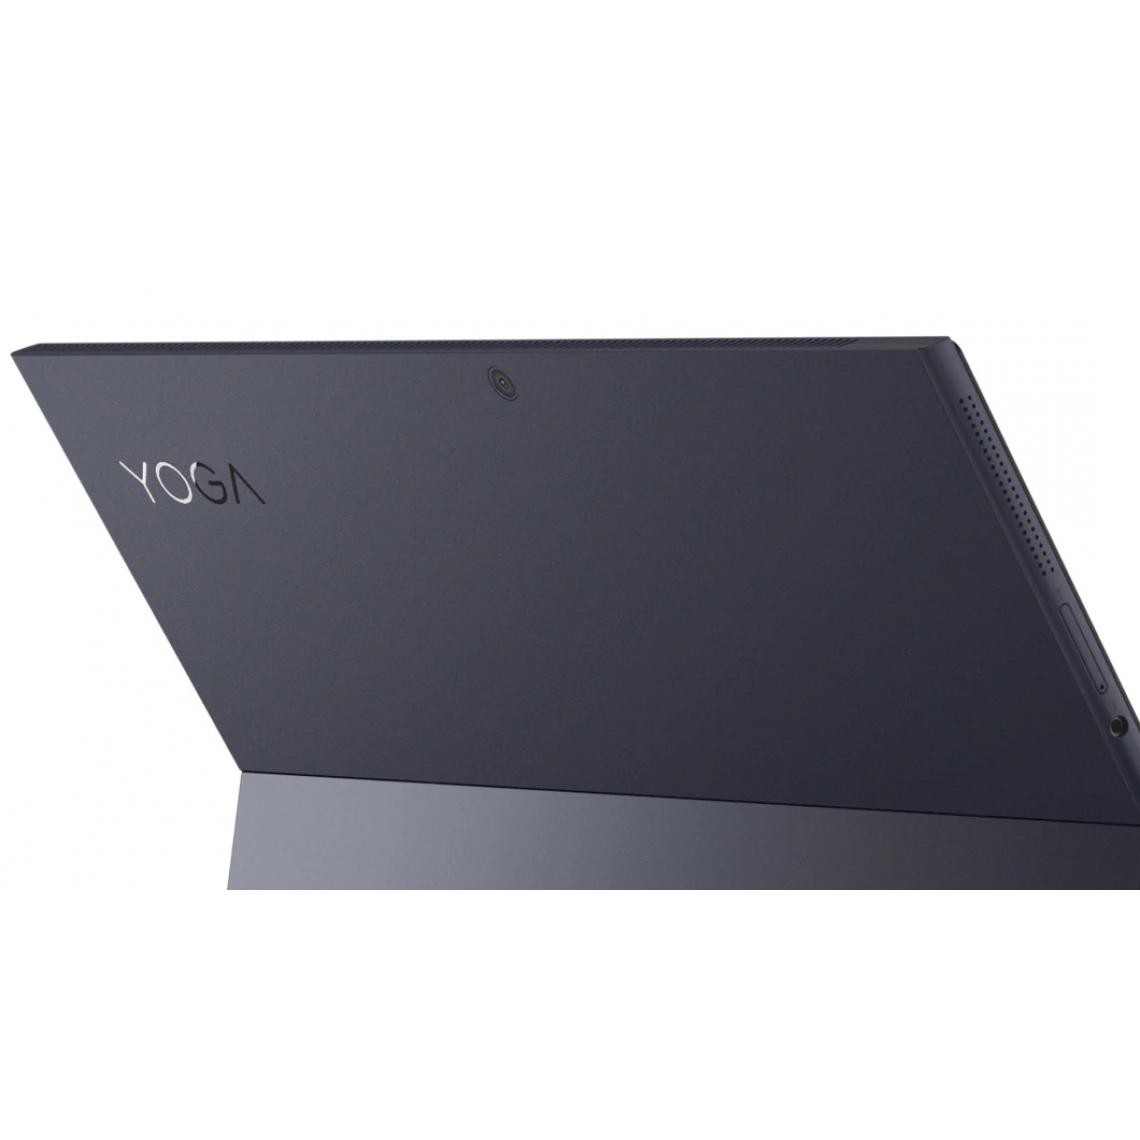 Lenovo - Yoga D700 i5-10210U 13p 8Go 256Go Yoga D700 Intel Core i5-10210U 13p WQHD 8Go 256Go SSD GFX integted W10P - PC Portable